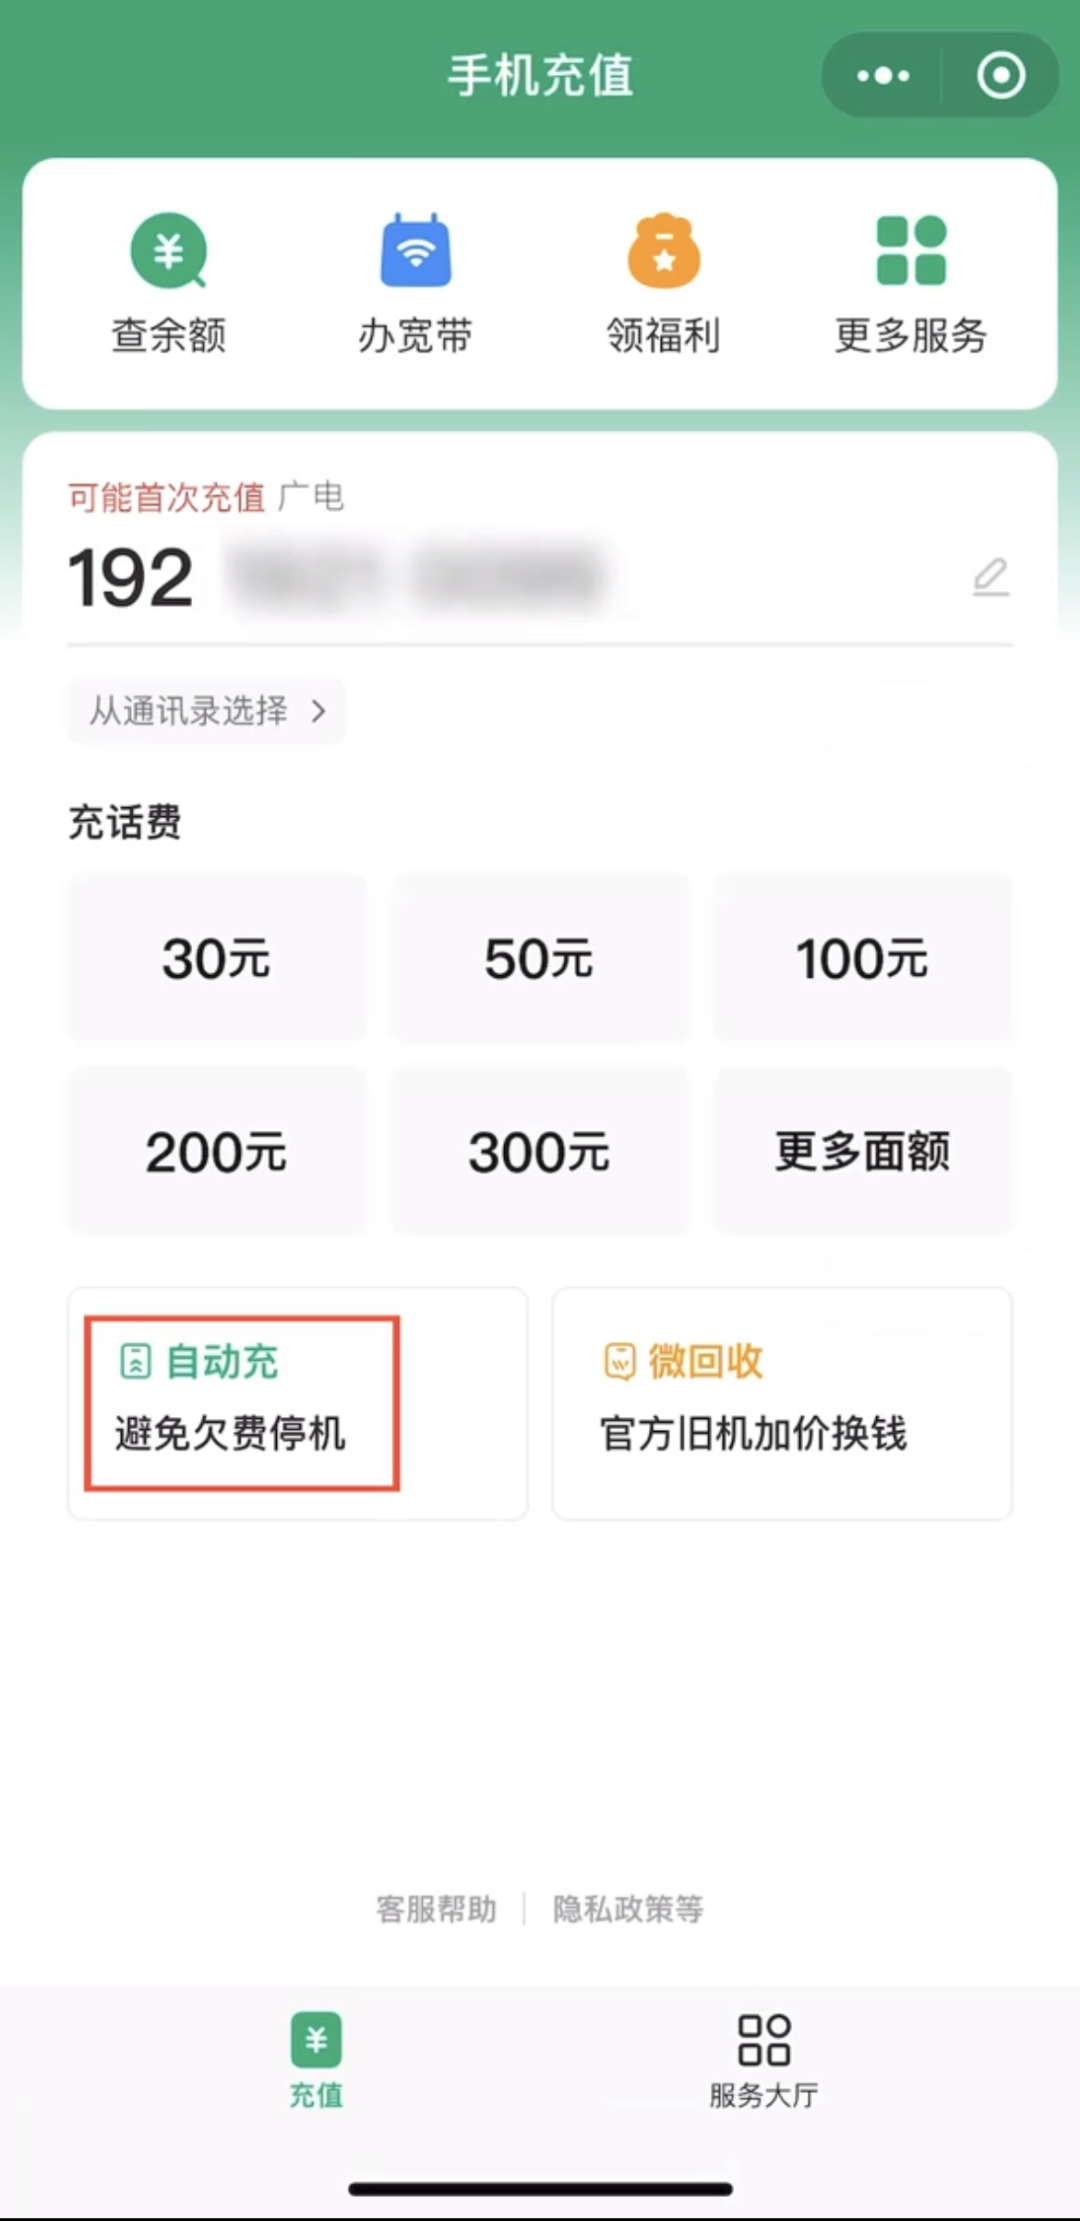 不用担心停机了，中国广电 192 手机号微信低额自动充话费服务上线